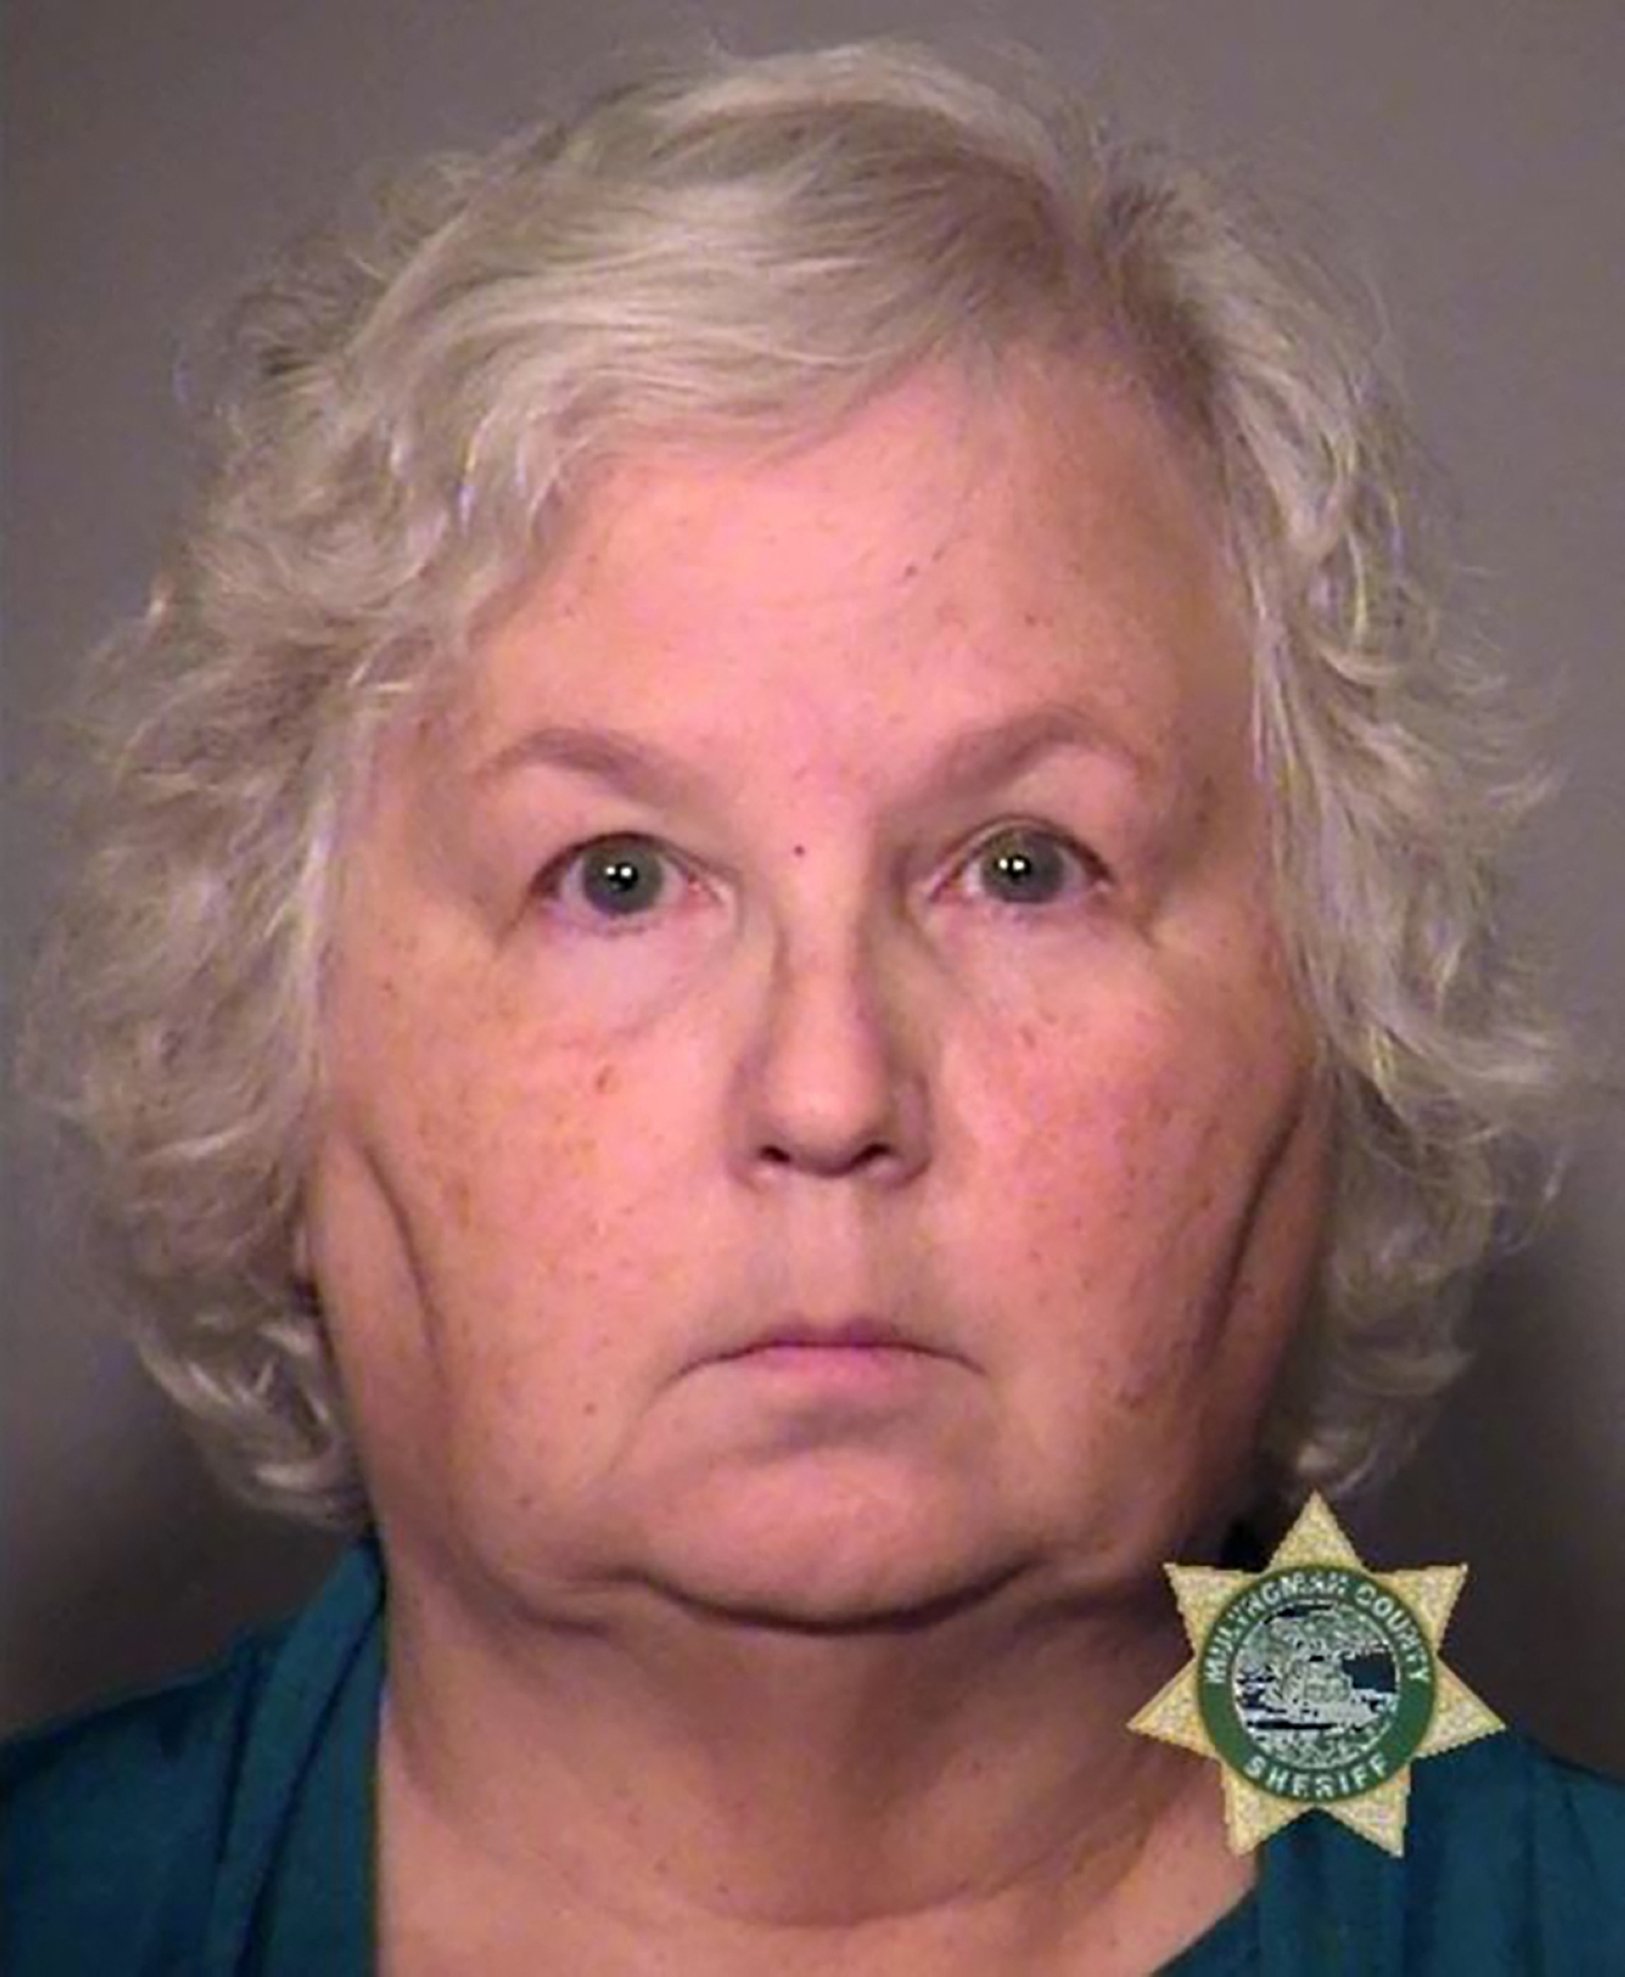 Foto pemesanan tak bertanggal dari Kantor Sheriff Kabupaten Multnomah di Oregon ini menunjukkan tersangka pembunuhan Nancy Crampton Brophy.  (AFP)